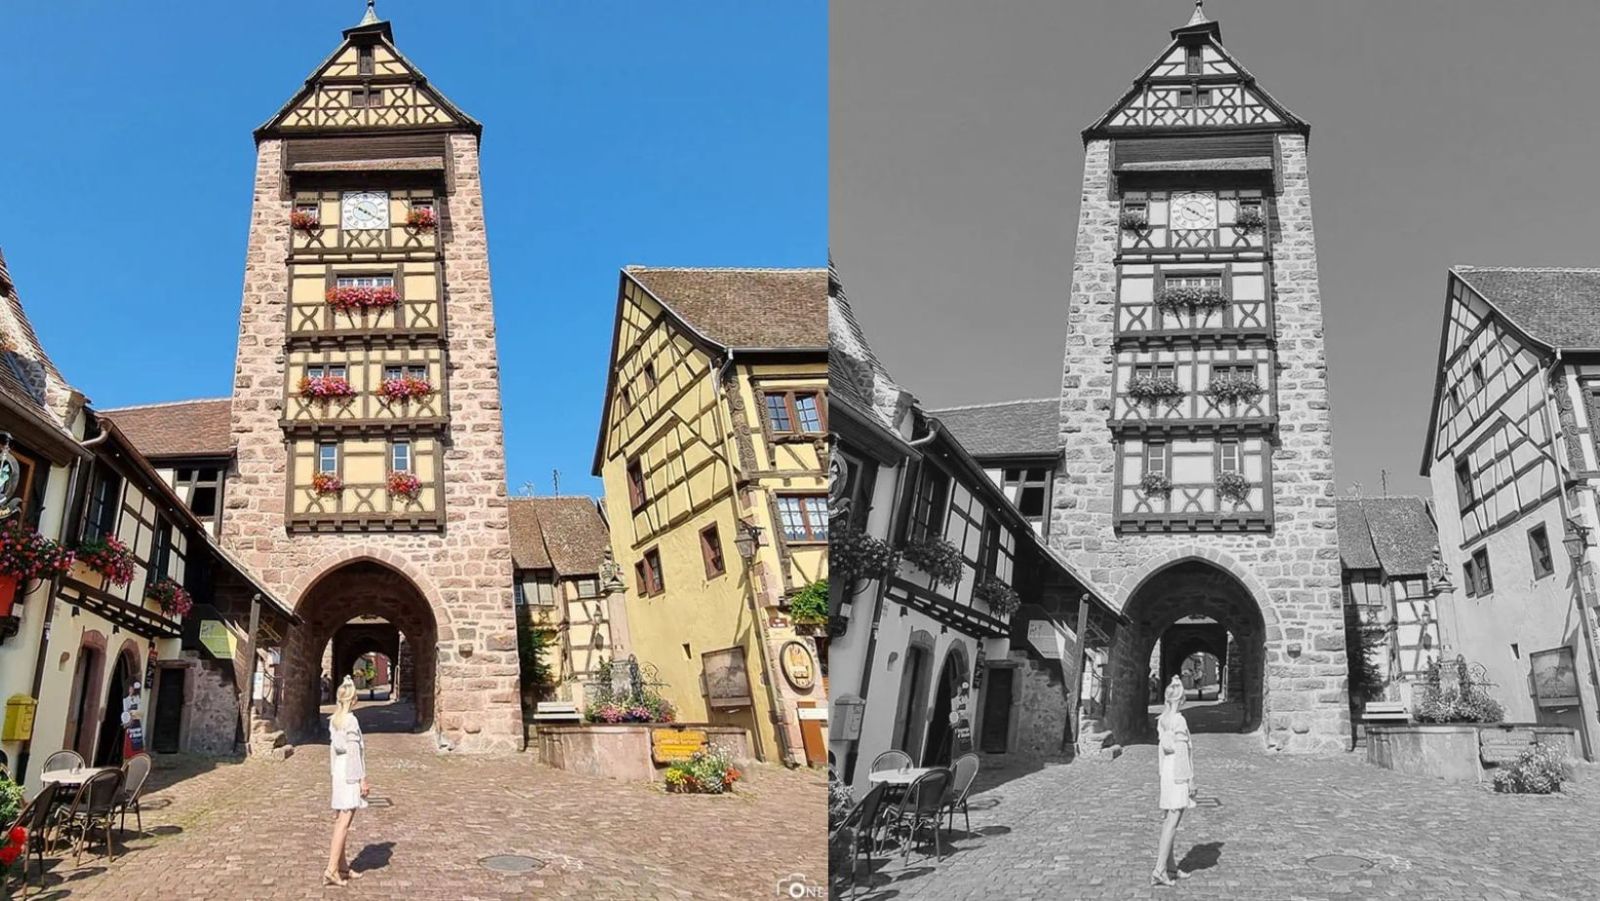 Découvrez les 3 grands crus d'Alsace dans ce village aux 350 000 bouteilles produites chaque année